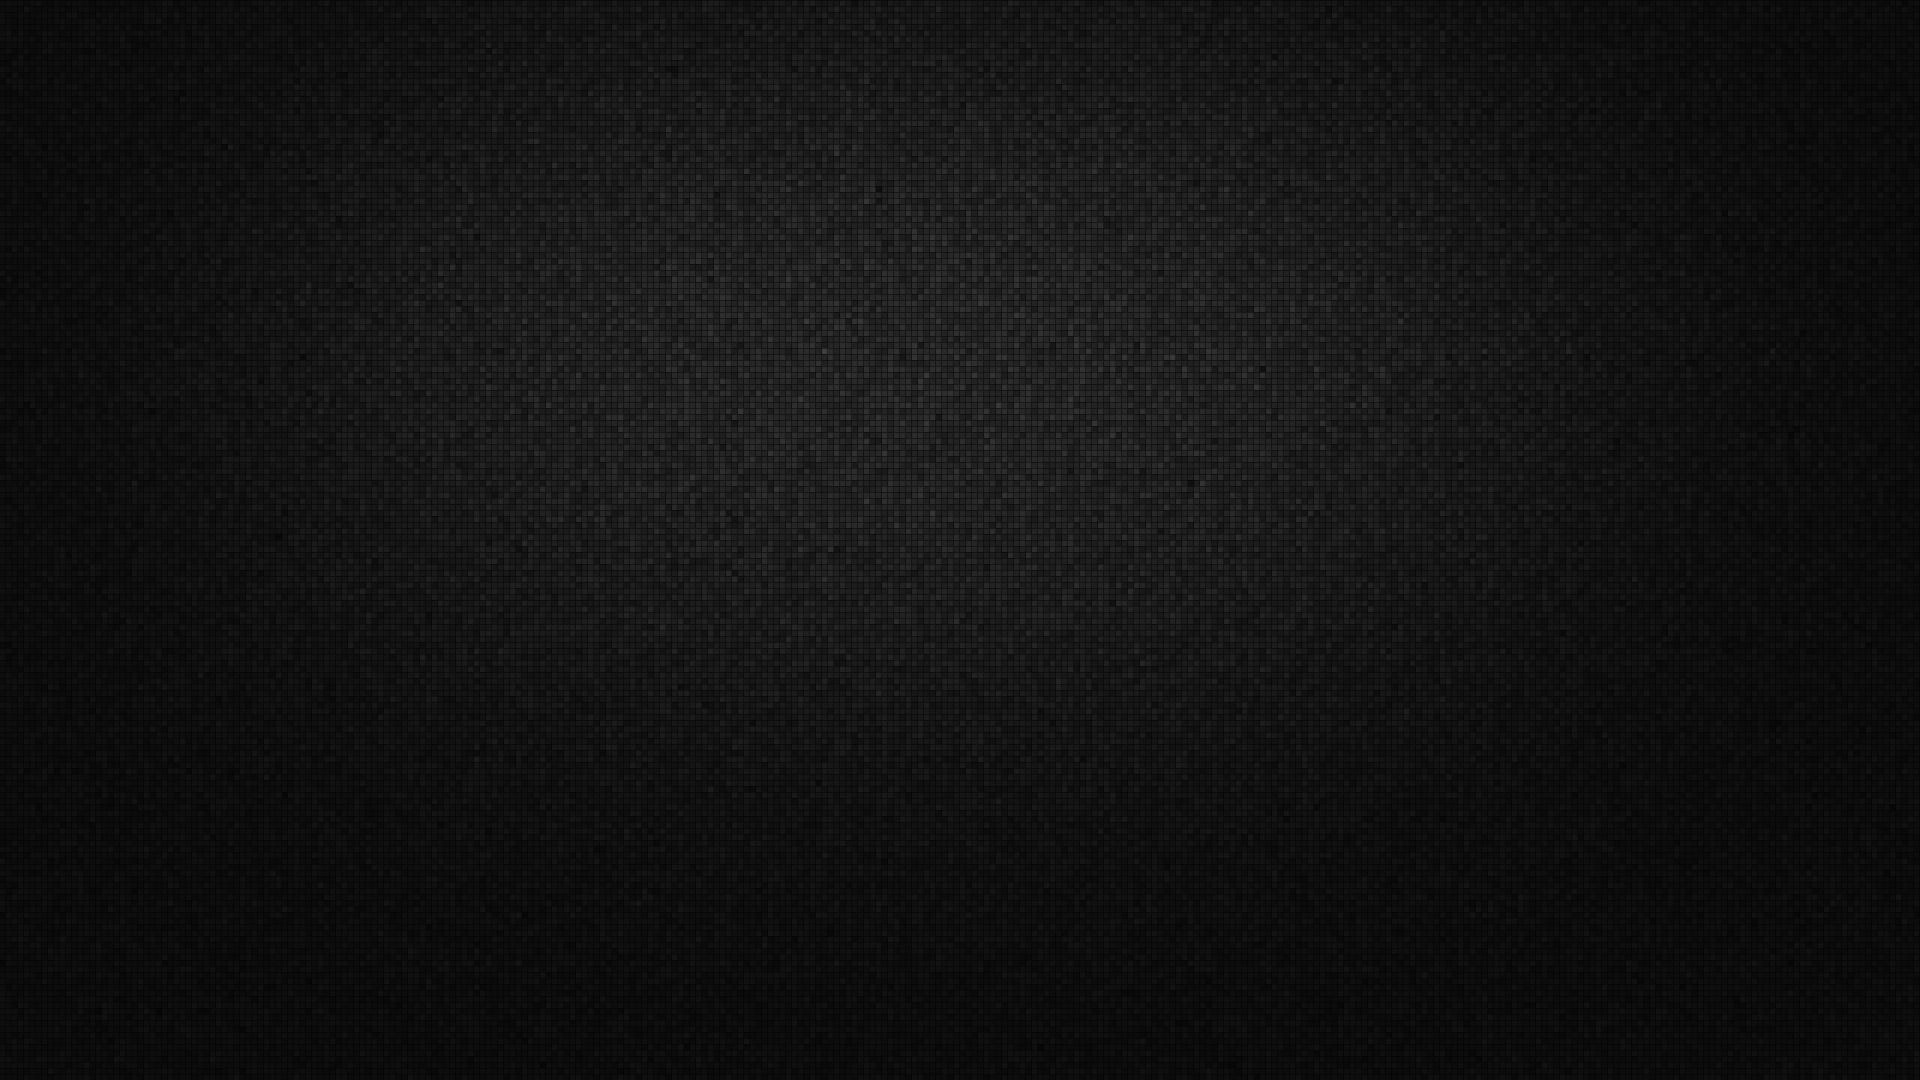 Black Computer Wallpapers Desktop Backgrounds 1920x1080 ID324423 1920x1080